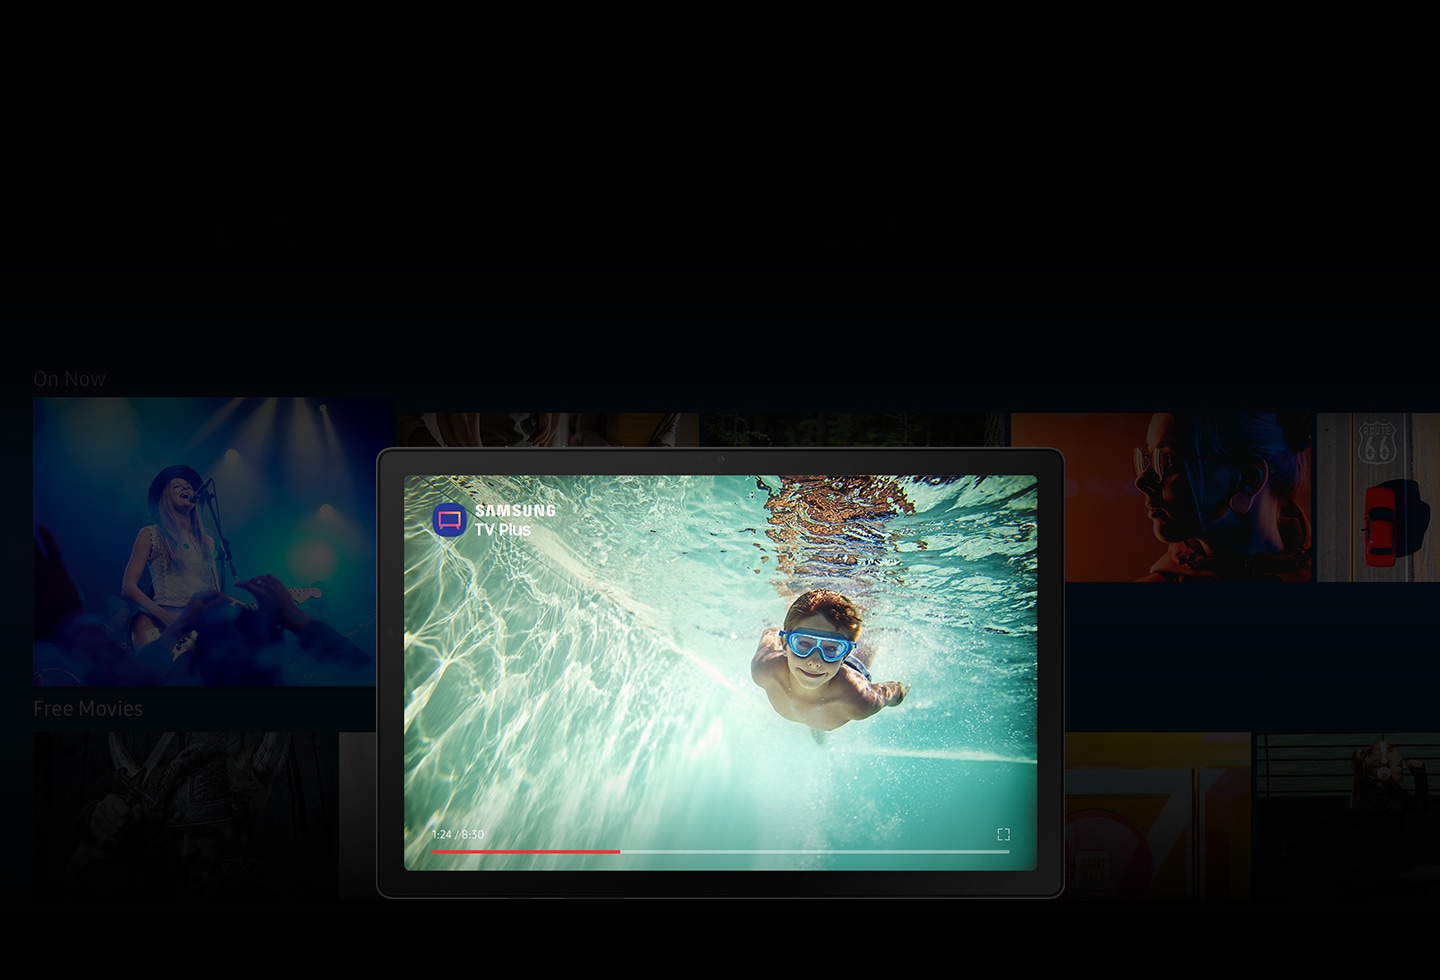 L'application Samsung TV Plus est ouverte sur la Galaxy Tab A8. Avec de nombreuses images floues d'émissions de télévision et de films en arrière-plan, l'écran affiche un garçon nageant sous l'eau avec l'icône de l'application et le logo de Samsung TV Plus.